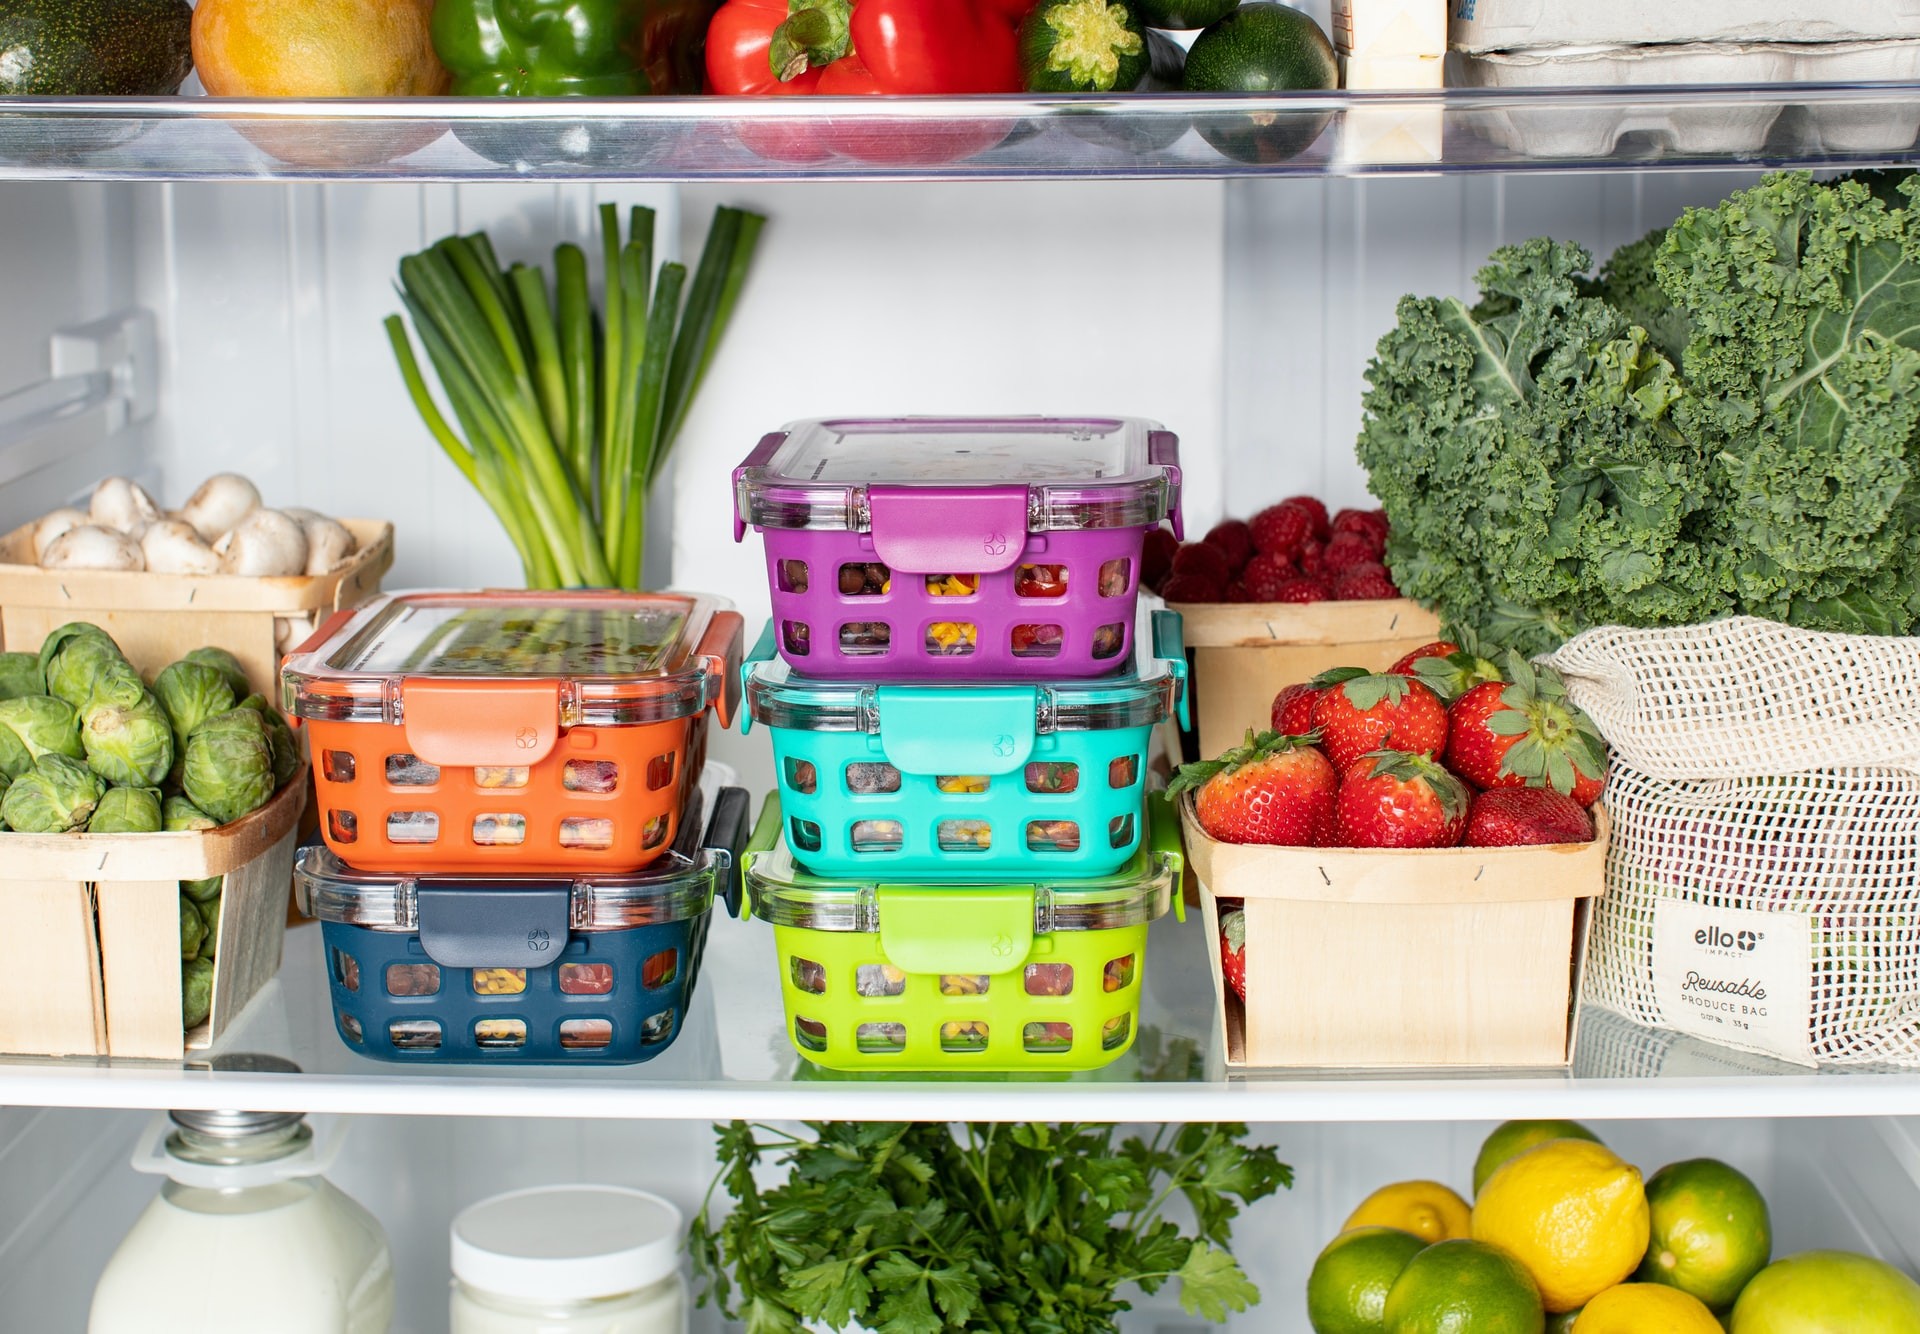 الطريقة المناسبة لحفظ الطعام في الثلاجة أو الفريزر